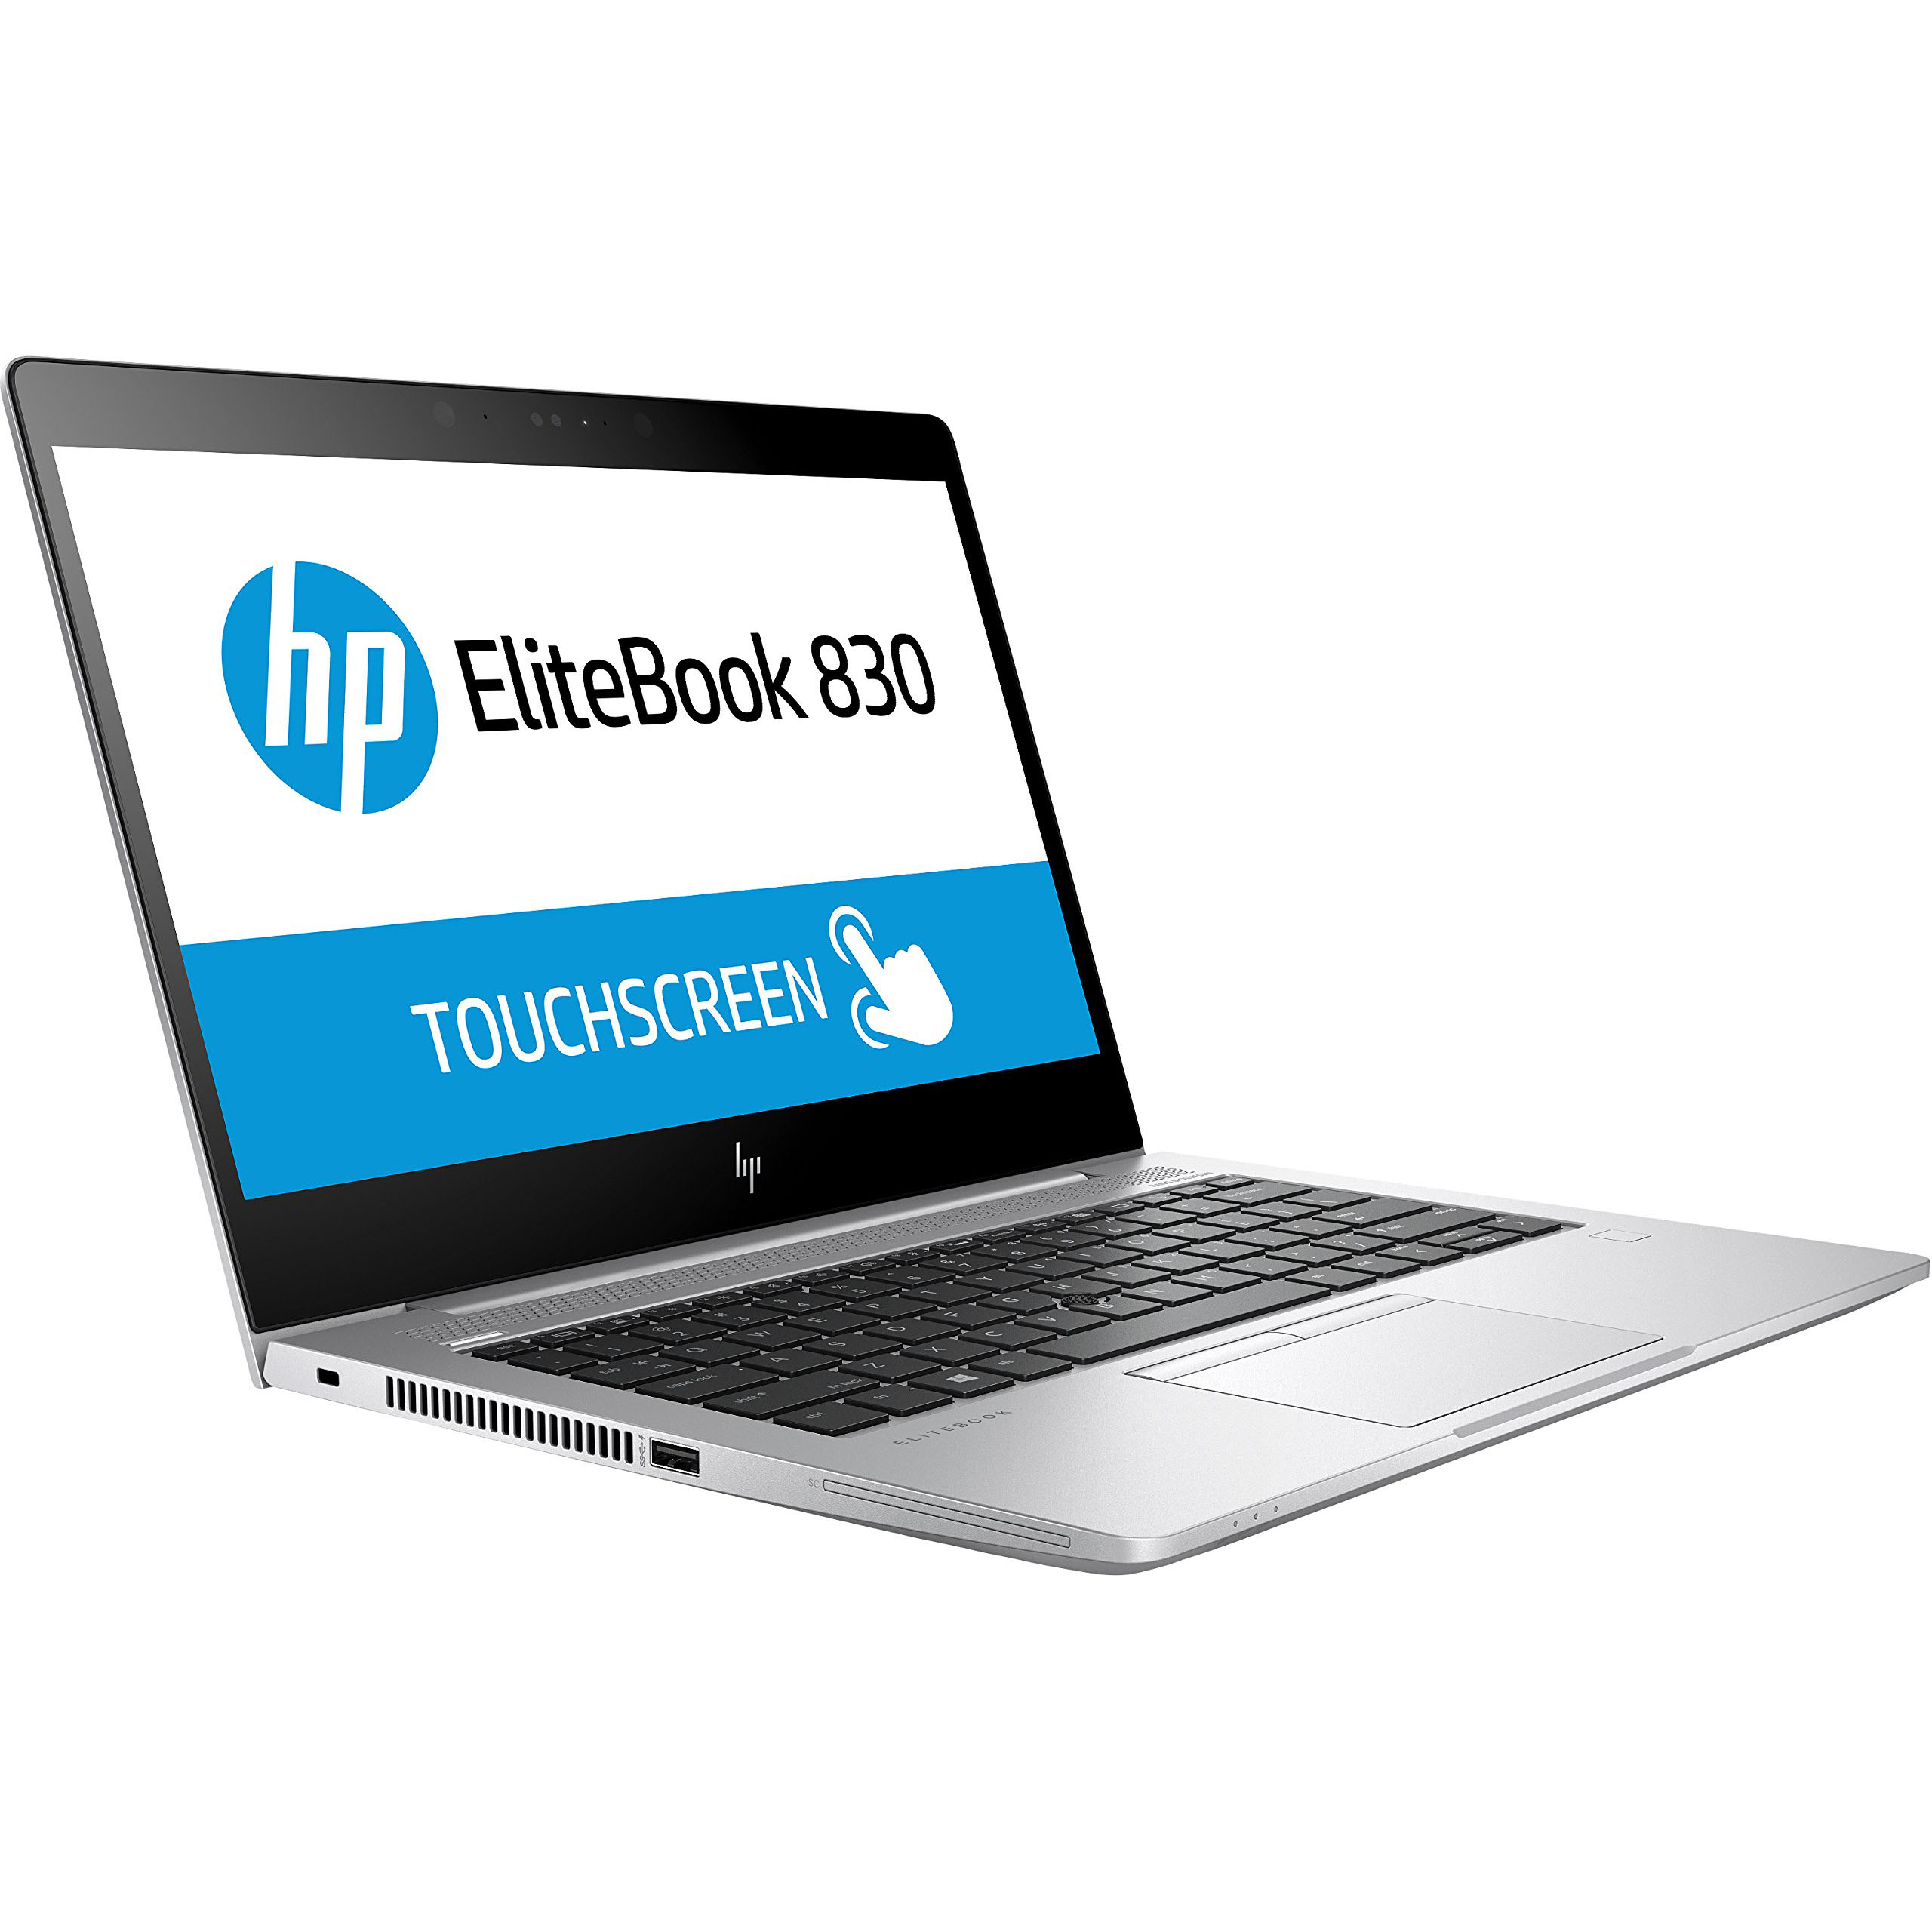 Nâng cấp SSD, RAM cho Laptop HP EliteBook 830 G5 - Tuanphong.vn